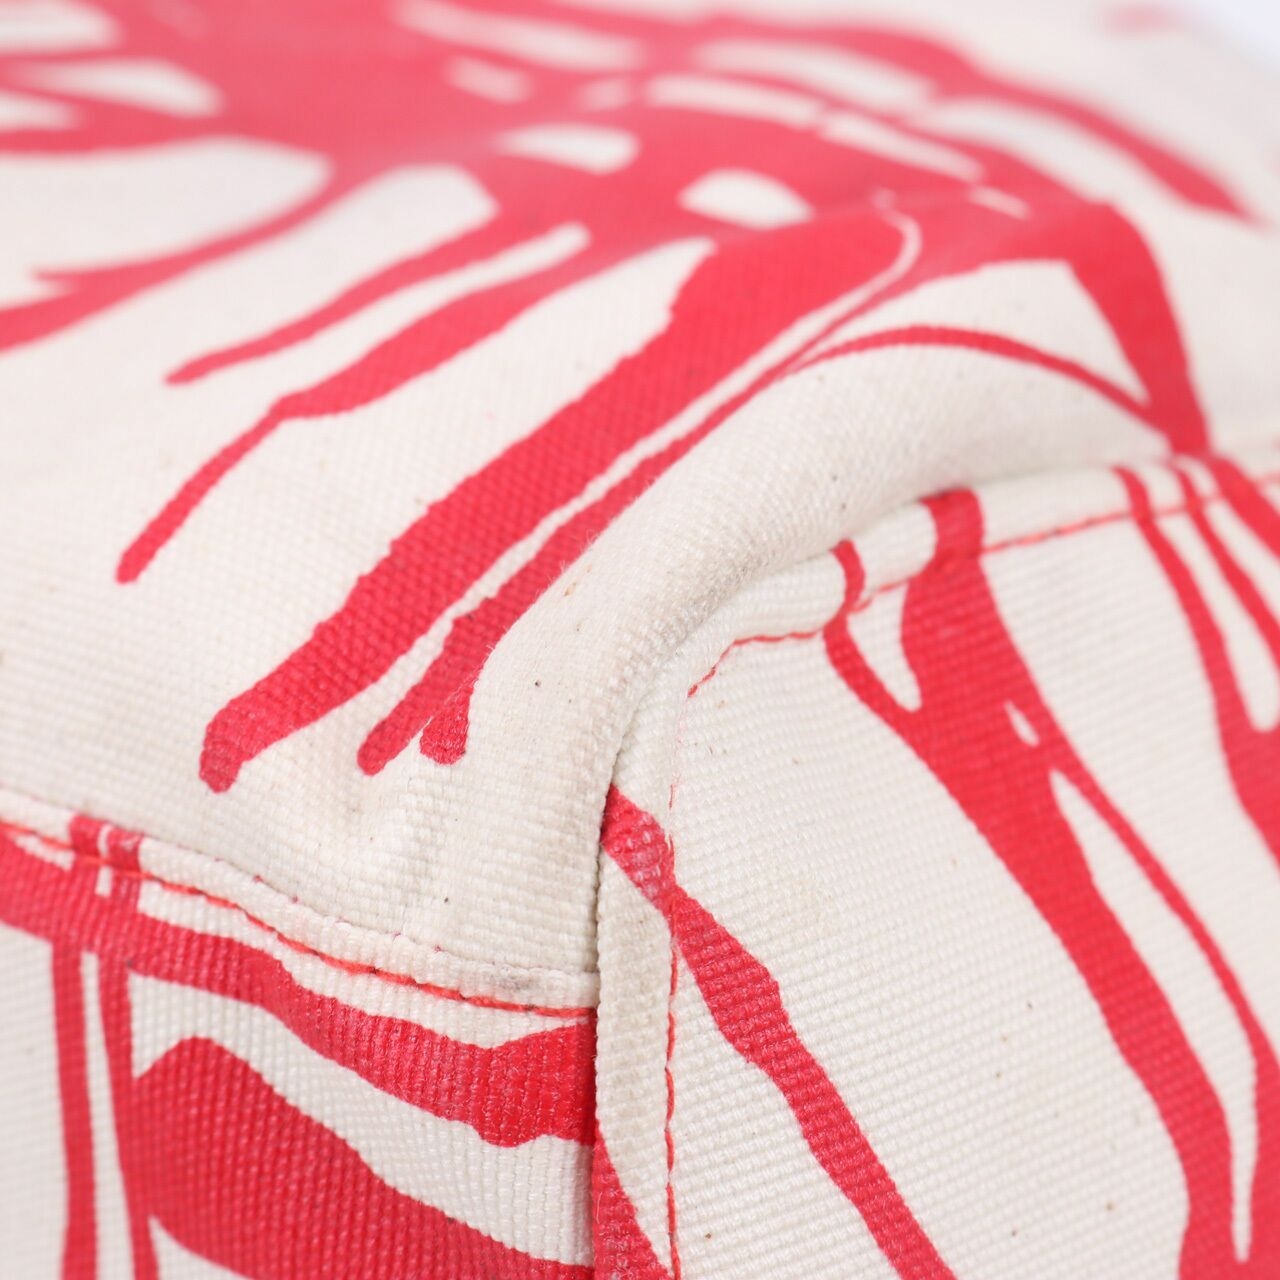 Tulisan Red & White Satchel Bag